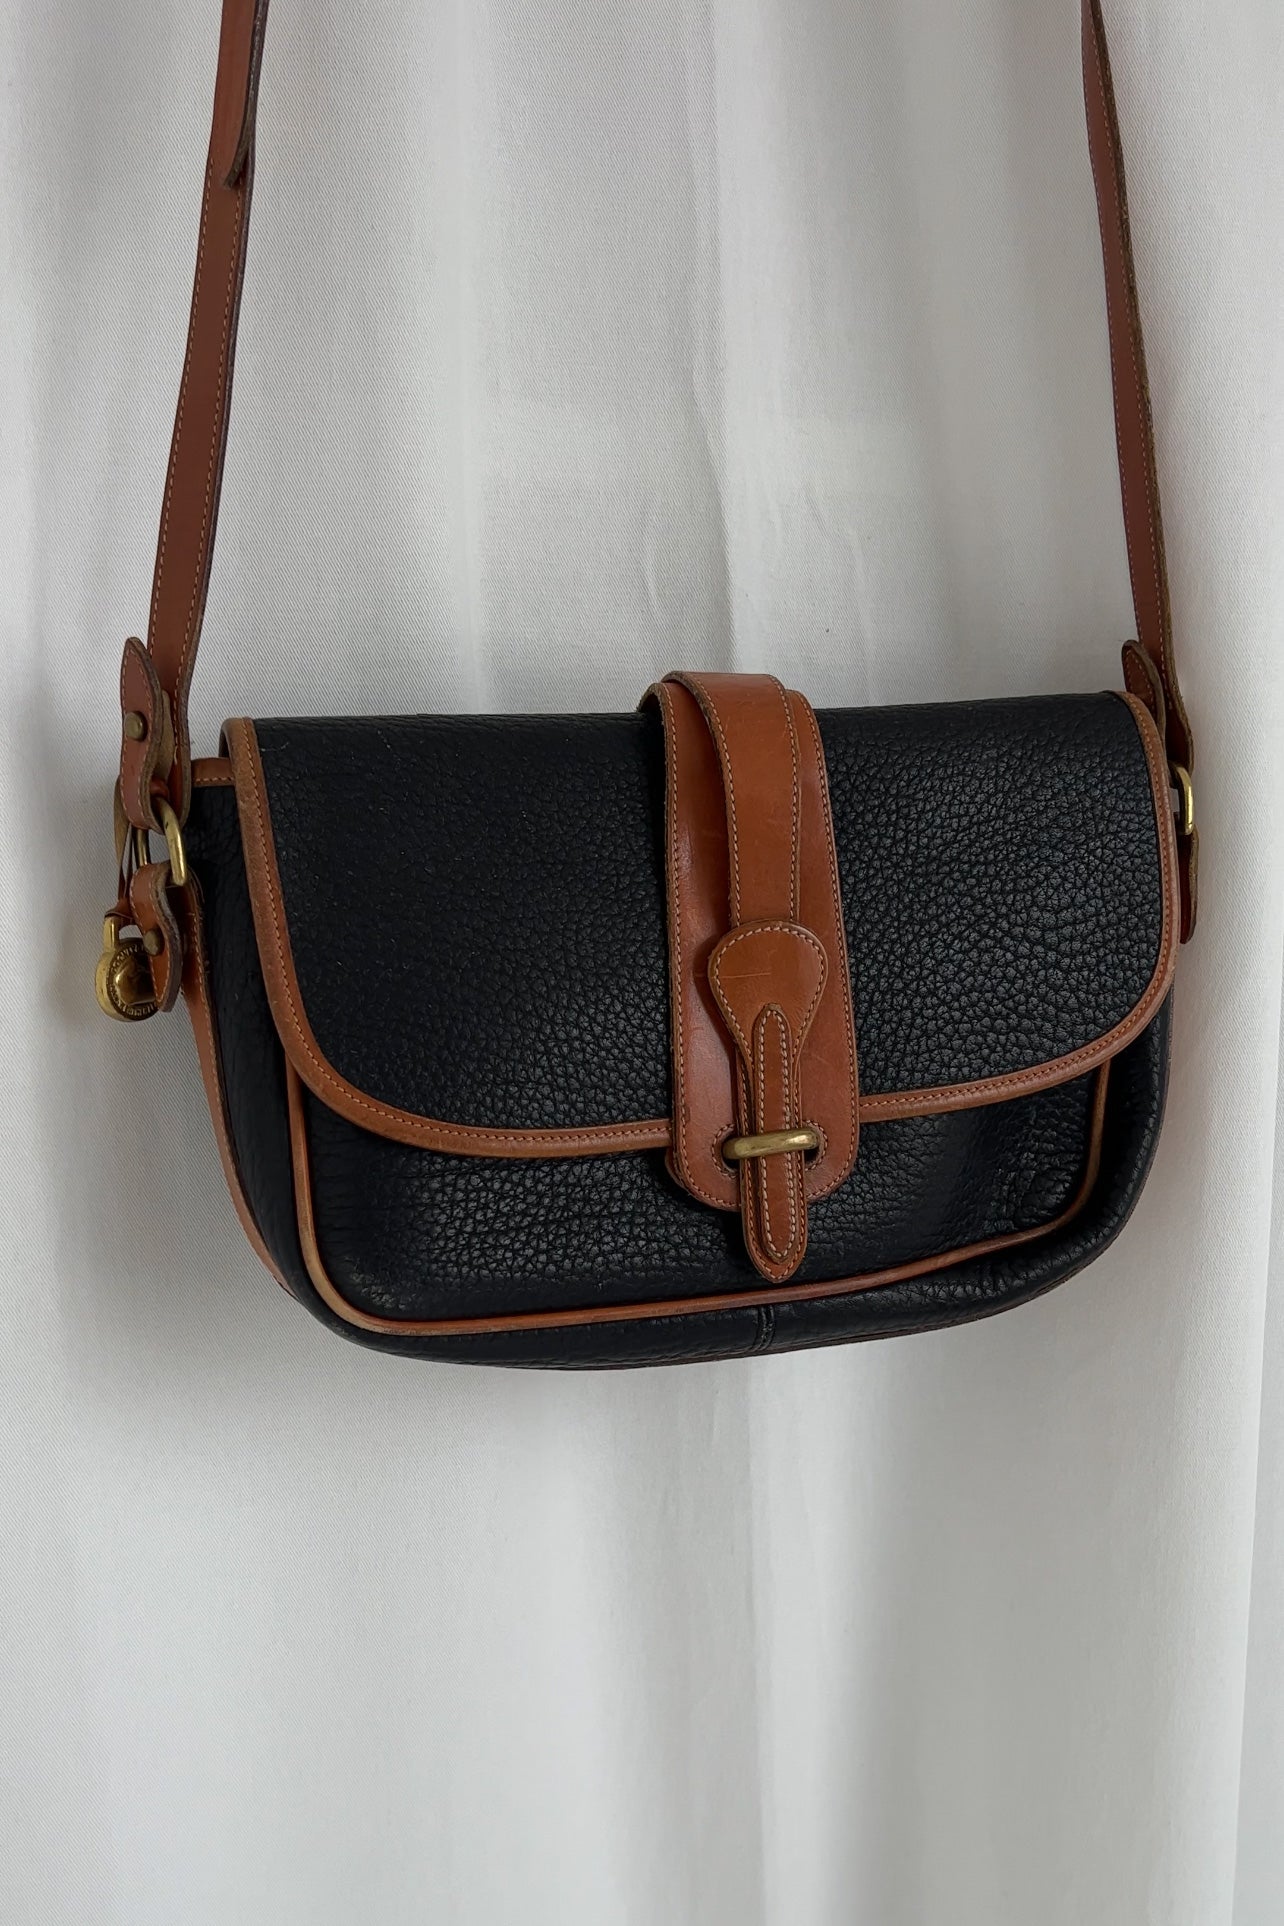 Vintage Onyx Dooney & Bourke Leather Shoulder Bag